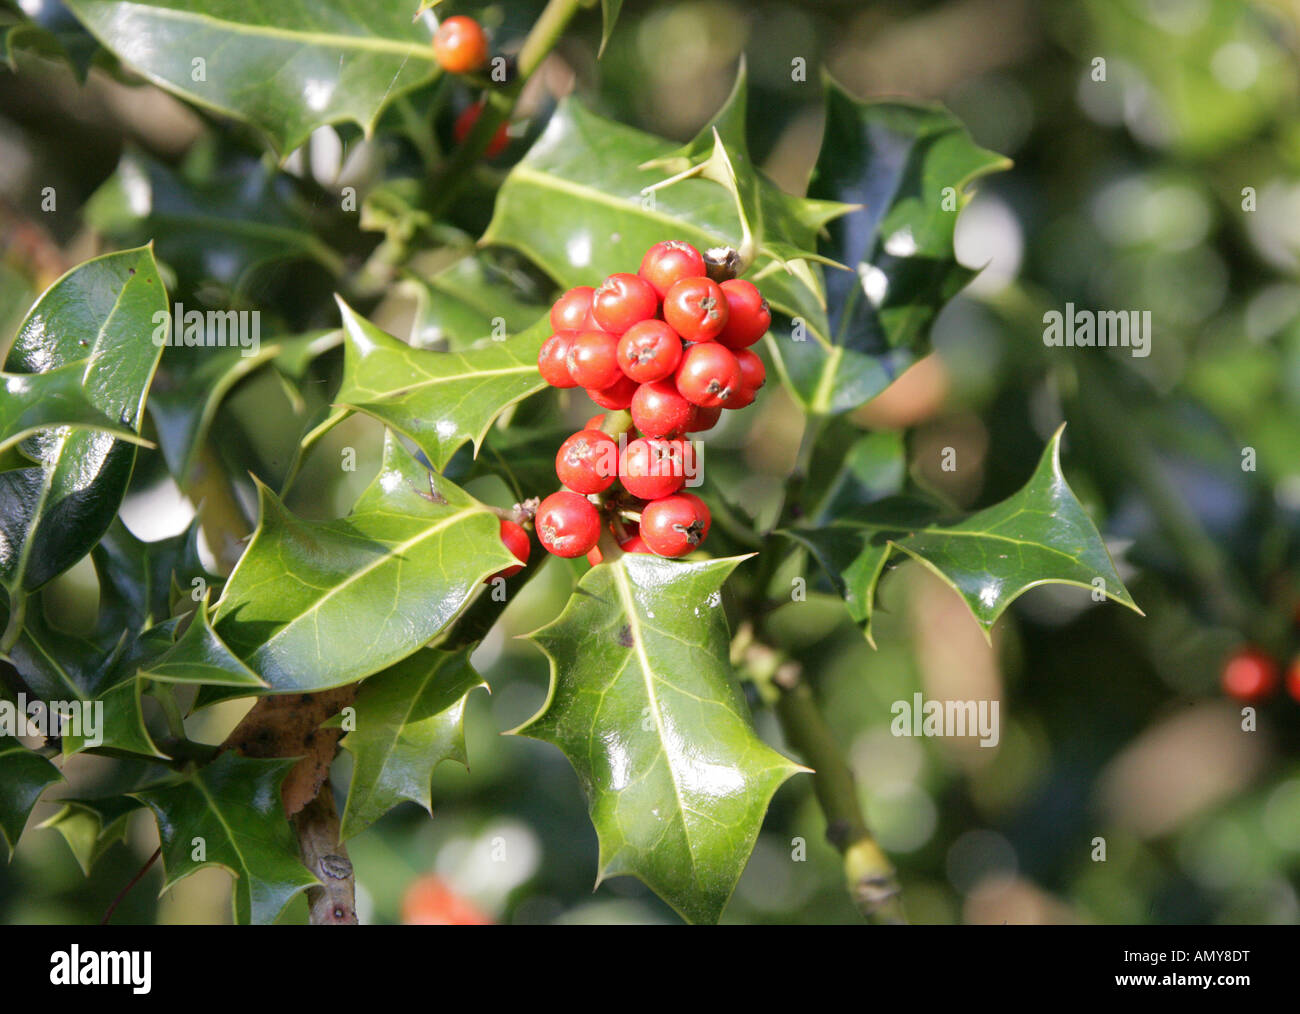 Holly Berries, Ilex aquifolium, Aquifoliaceae Stock Photo